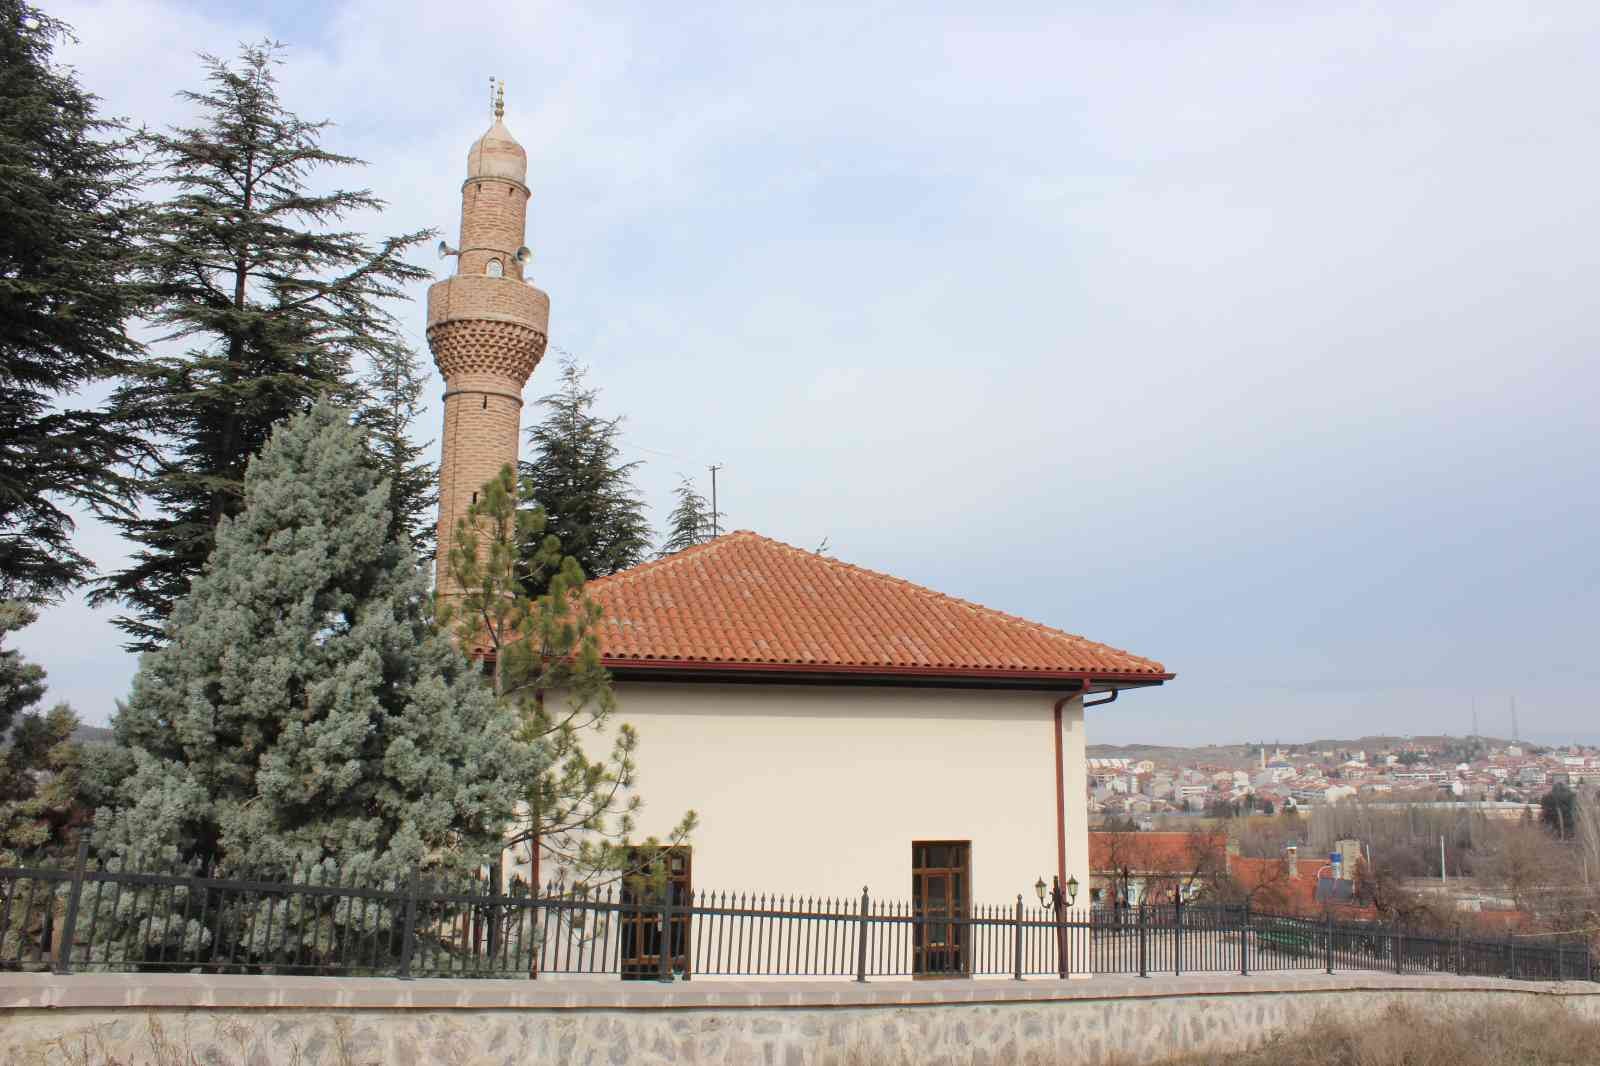 Osmanlı Devleti’nin kurulduğunun dünyaya ilan edildiği camide anma programı